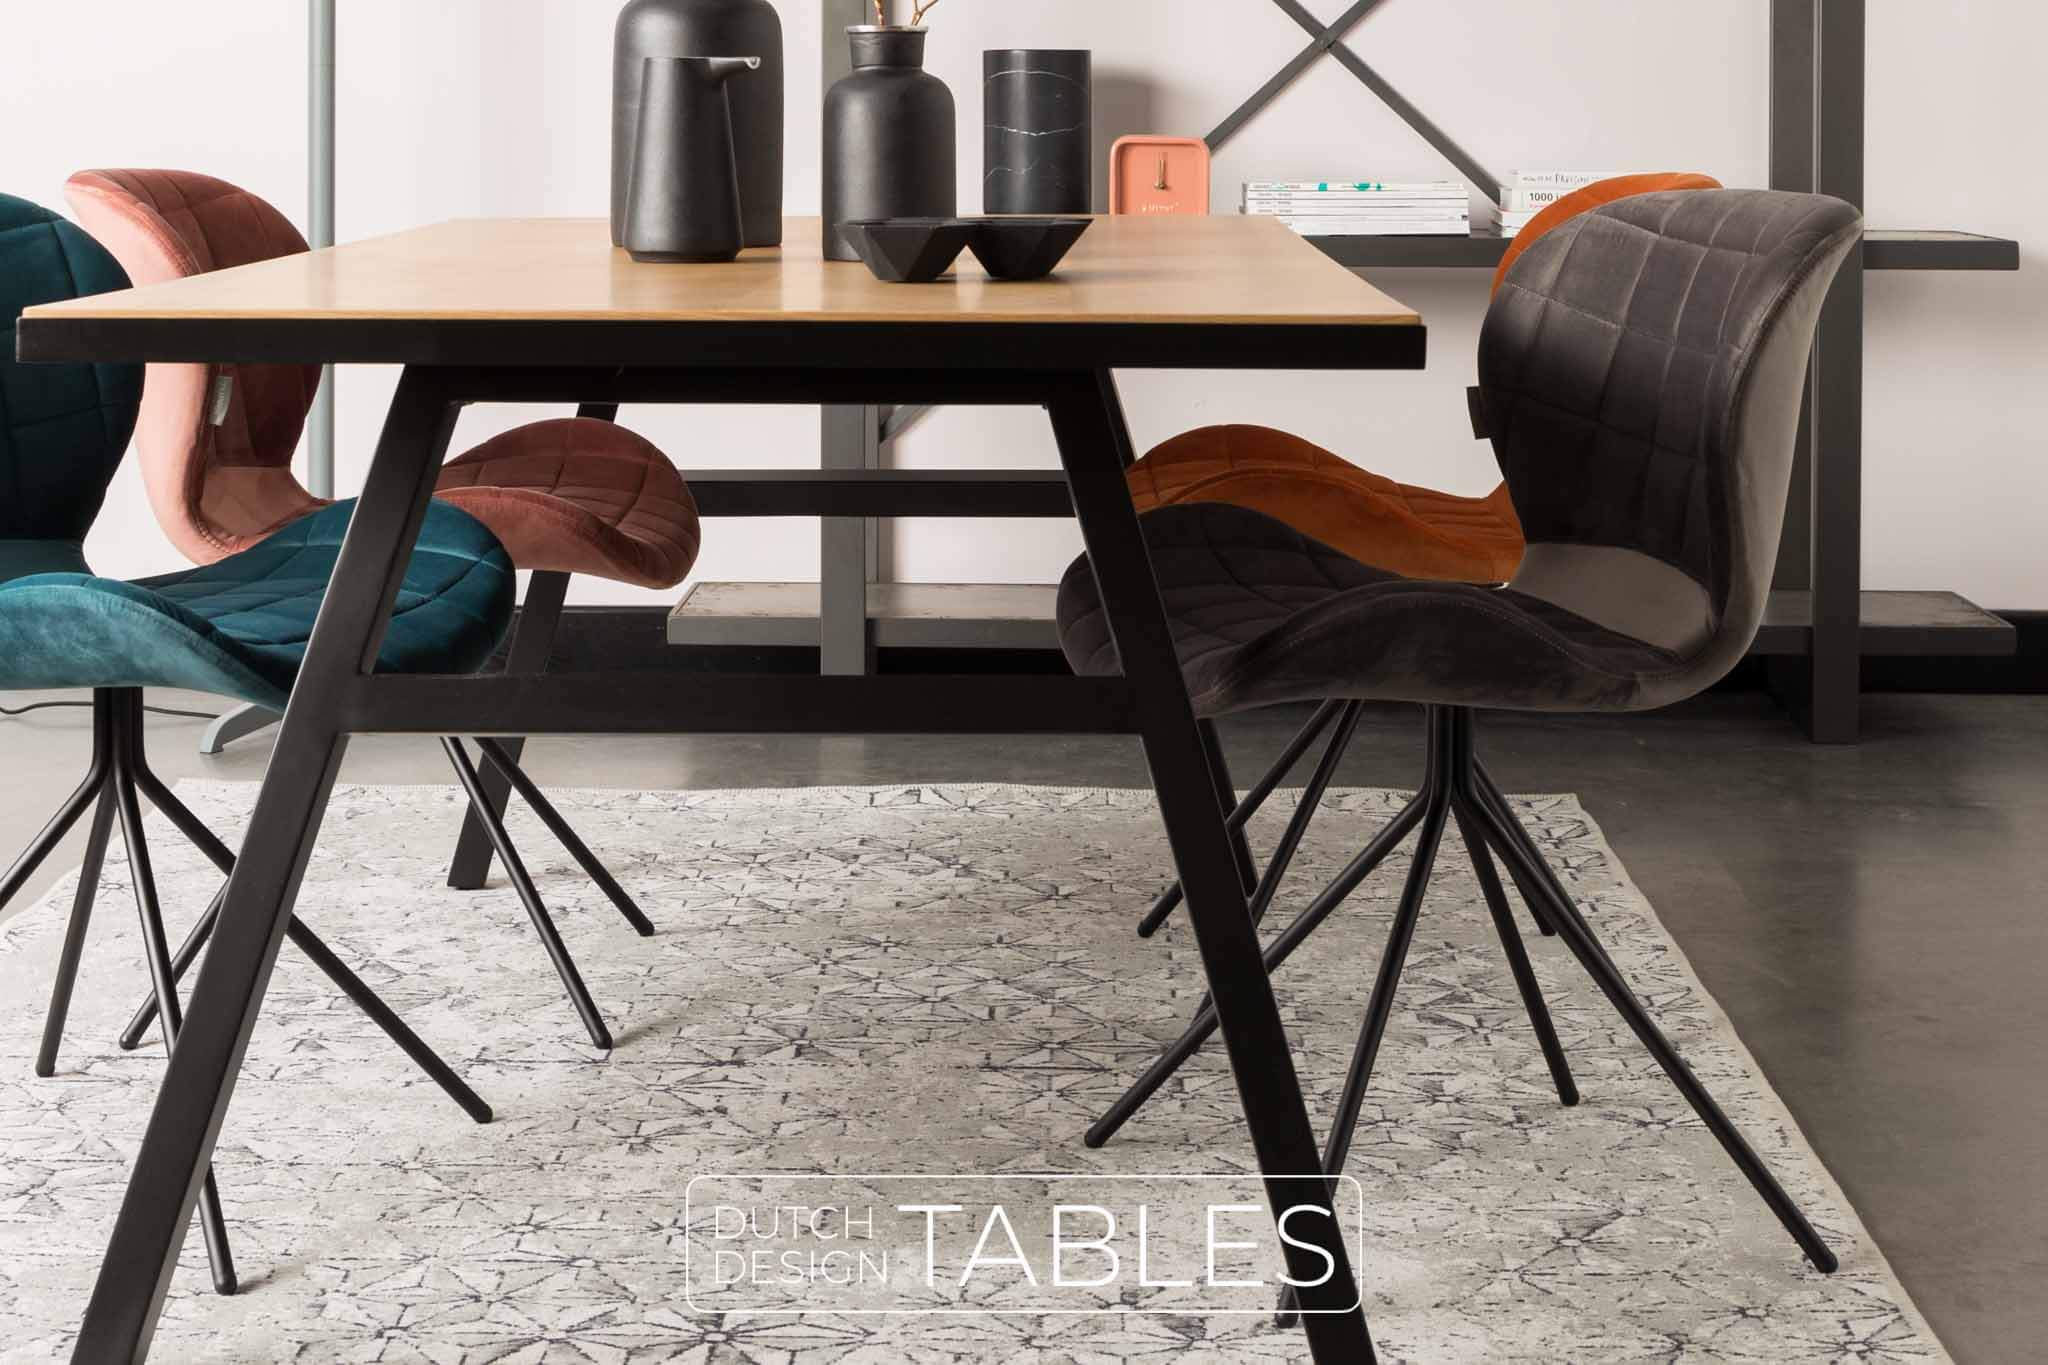 Kalmte kruising nicht Stoel Zuiver OMG velvet | Bekijk direct de kleuren | Gratis verzending –  Dutch Design Tables